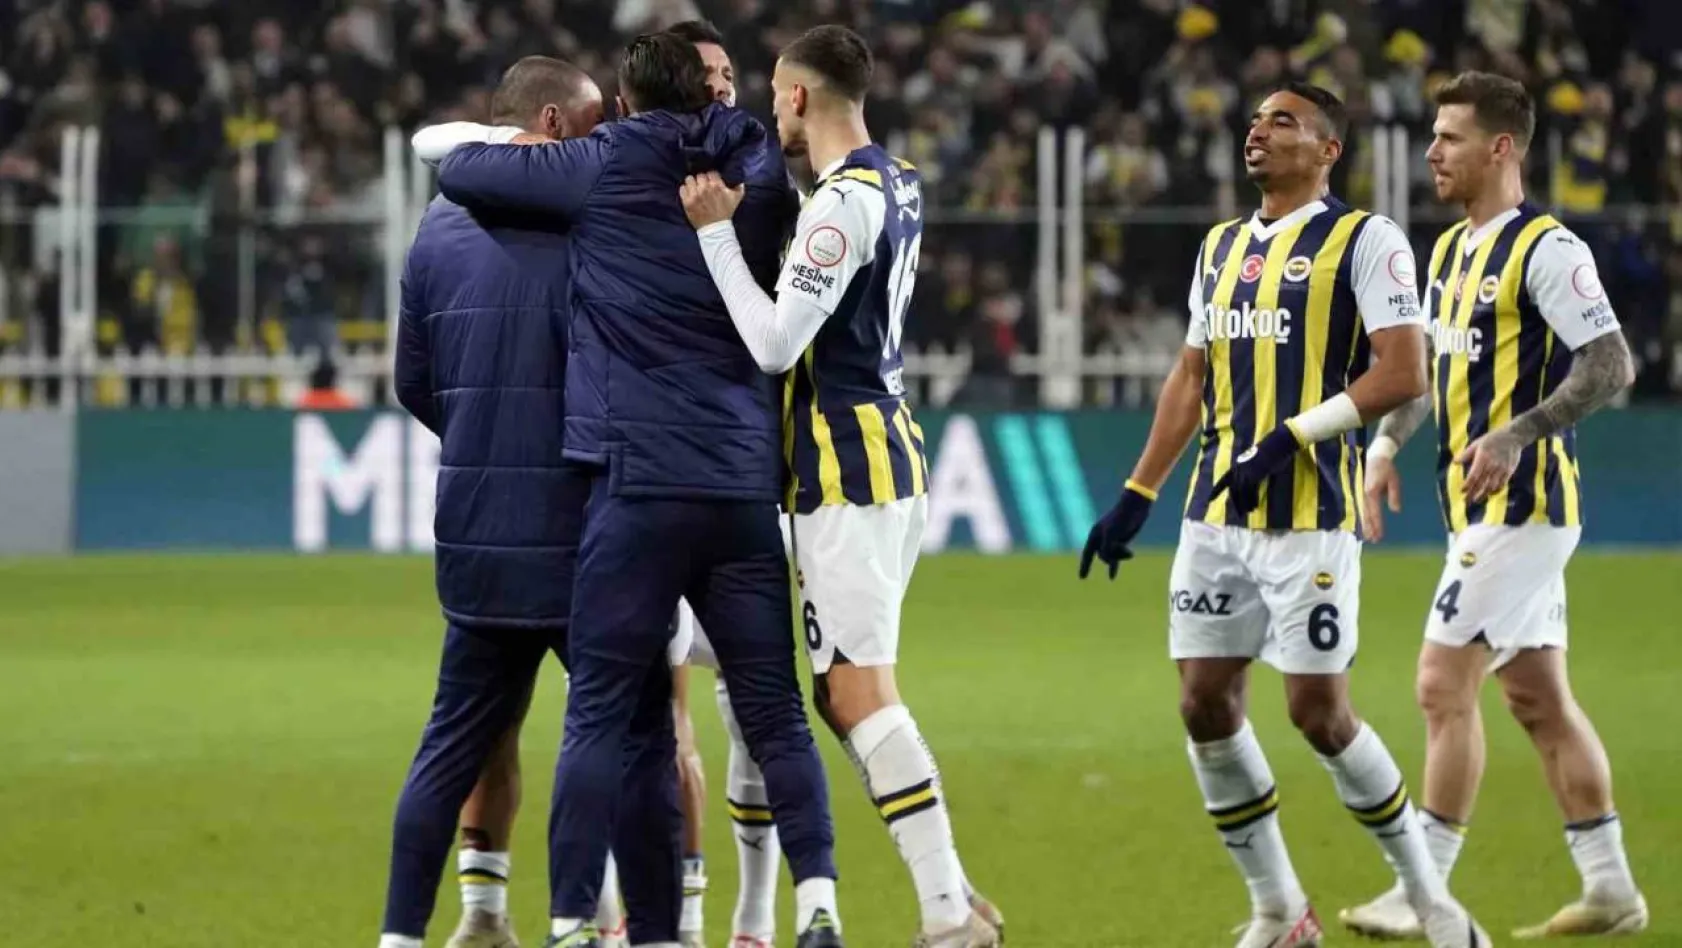 Trendyol Süper Lig: Fenerbahçe: 2 - MKE Ankaragücü: 1 (İlk yarı)